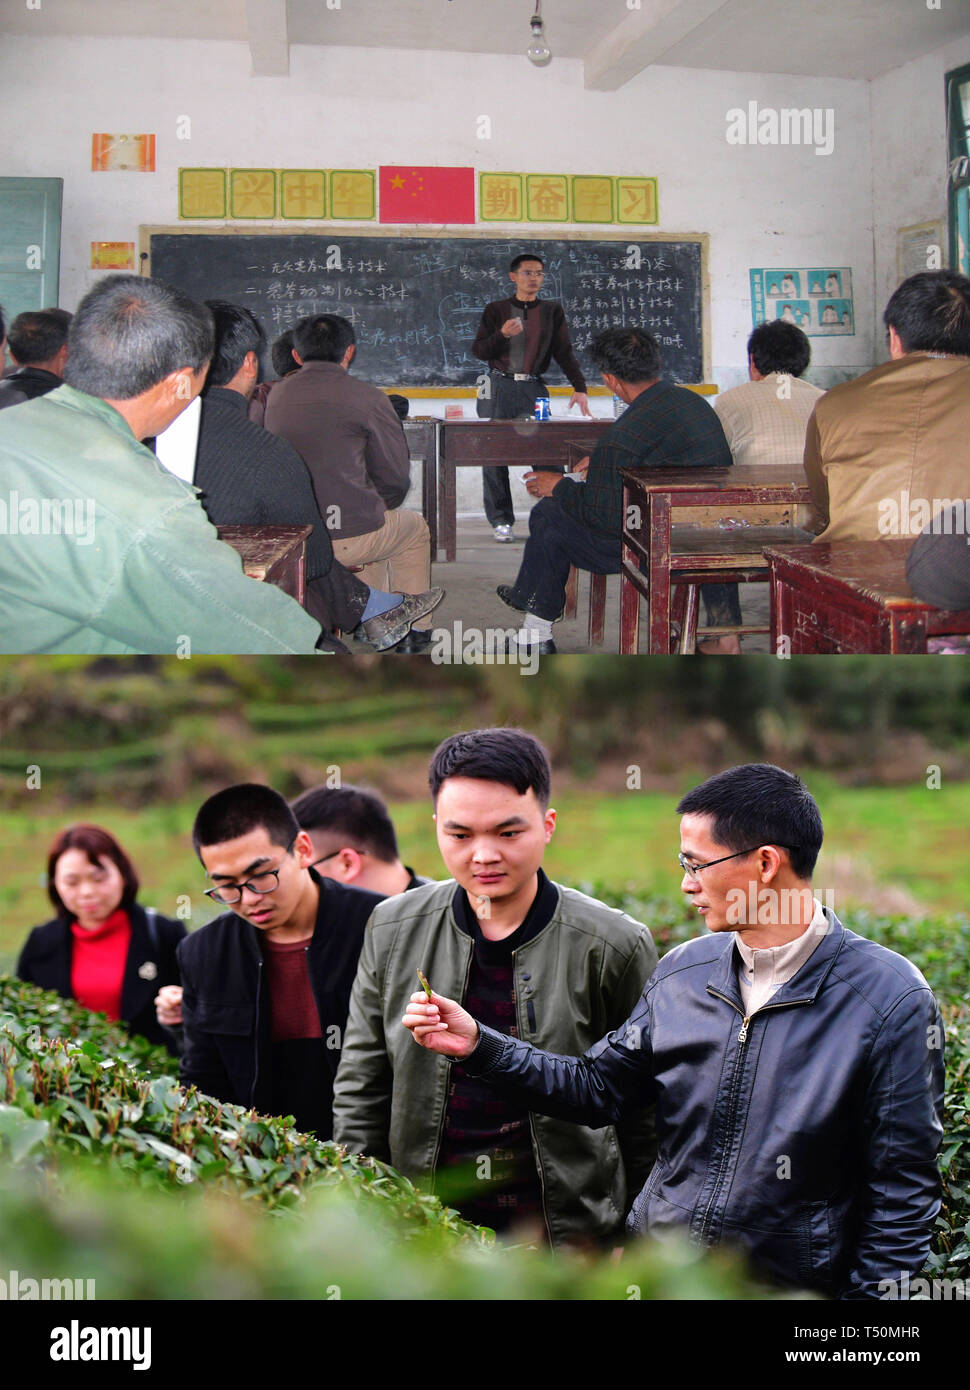 (190420) - WUYISHAN, April 20, 2019 (Xinhua) - Kombination Foto genommen, 2010 (oben) zeigt Technik Ratgeber Liu Guoying Lehre eine Klasse für die örtlichen Landwirte und am März 26, 2019 (unten) zeigt er die Einführung von Wissen über Tee an Studenten in Fuzhou, Provinz Fujian im Südosten Chinas. (Xinhua / Wei Peiquan) Stockfoto